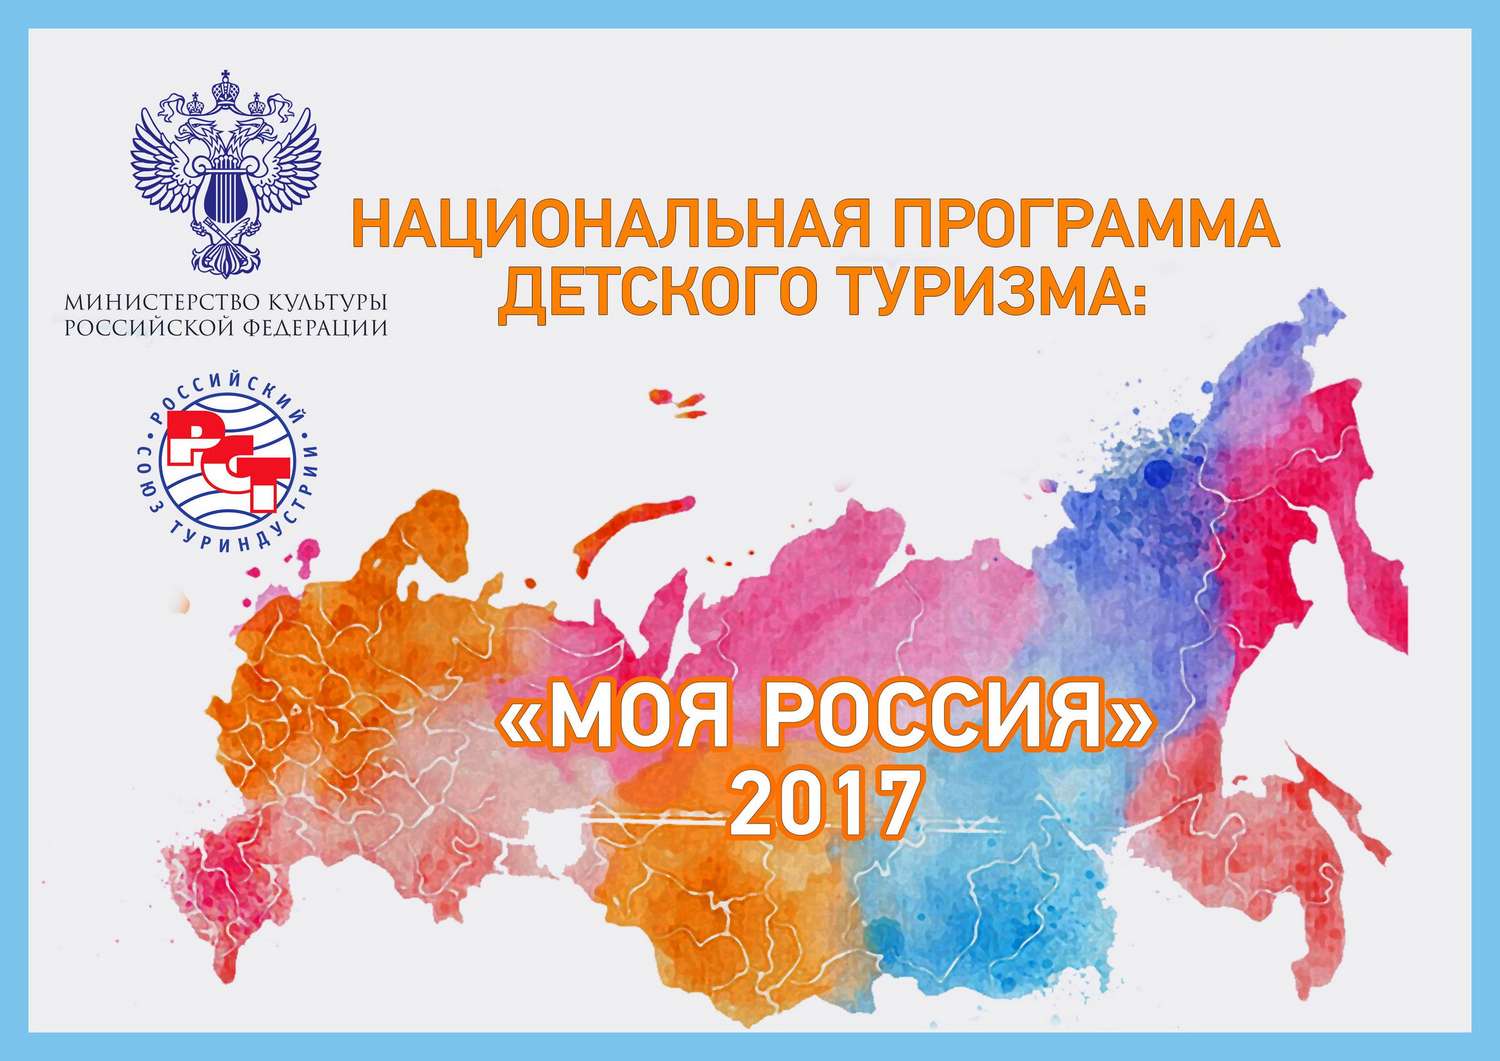 Национальная программа детского туризма "Моя Россия"